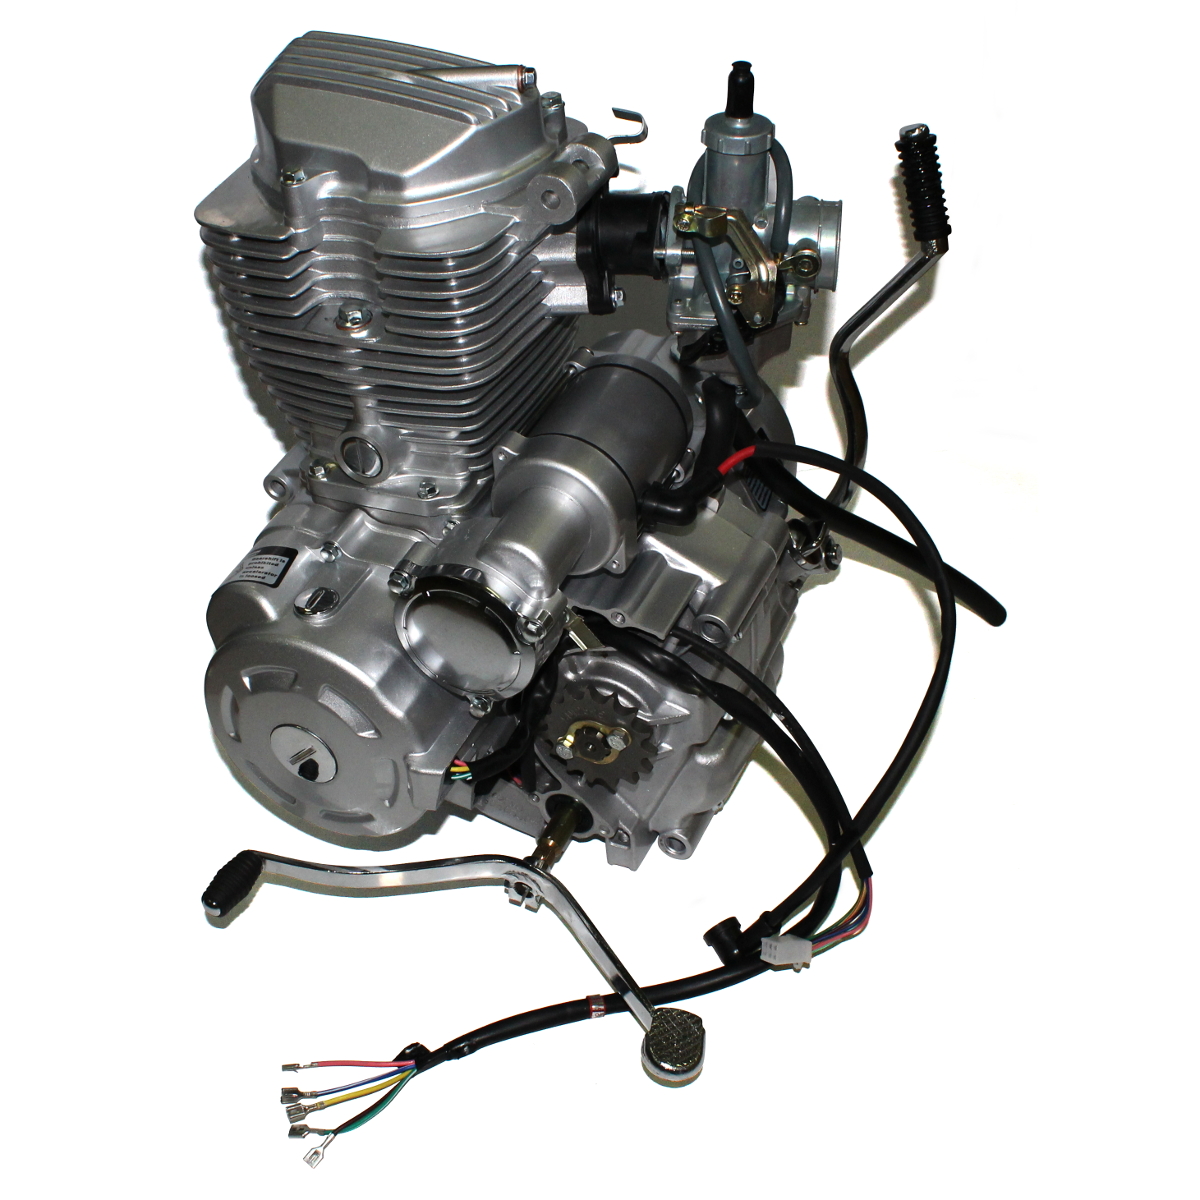 Мотор 150 лс. Мотор 162 FMJ 150 кубов. 162 FMJ двигатель 150 кубов. Мотор 125сс. 150cc мотор.